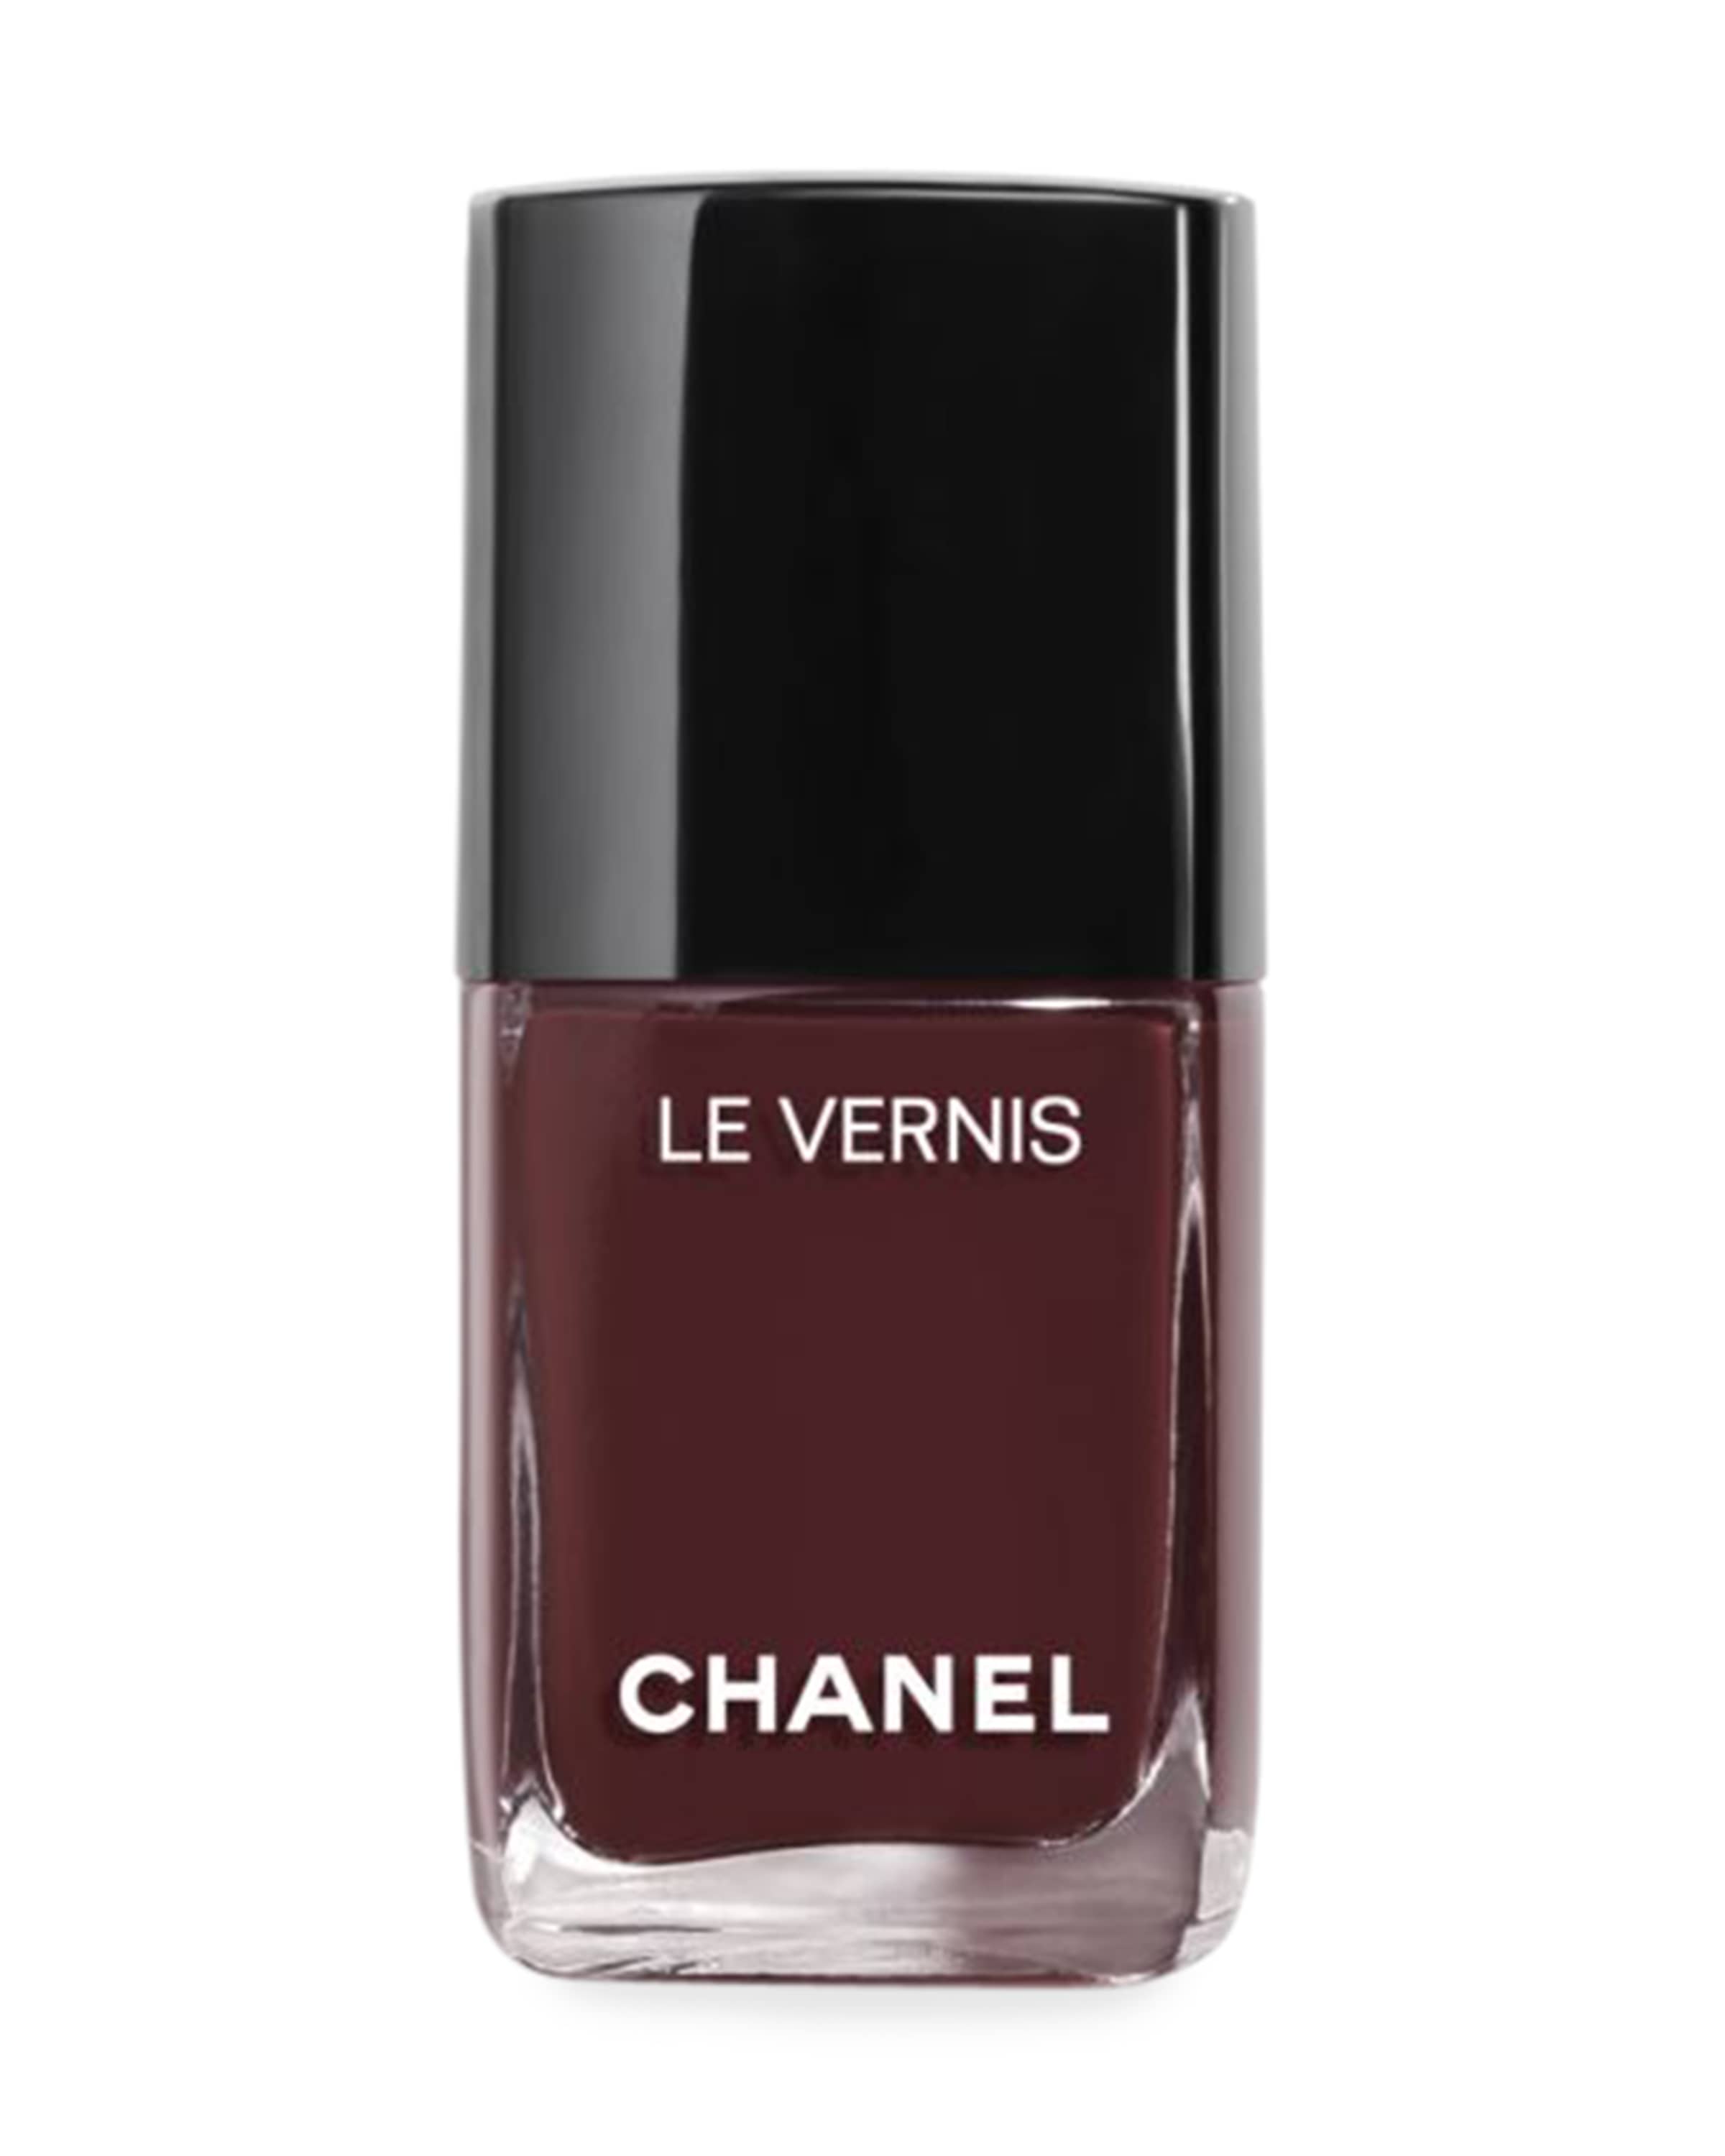 CHANEL LE VERNIS Longwear Nail Color